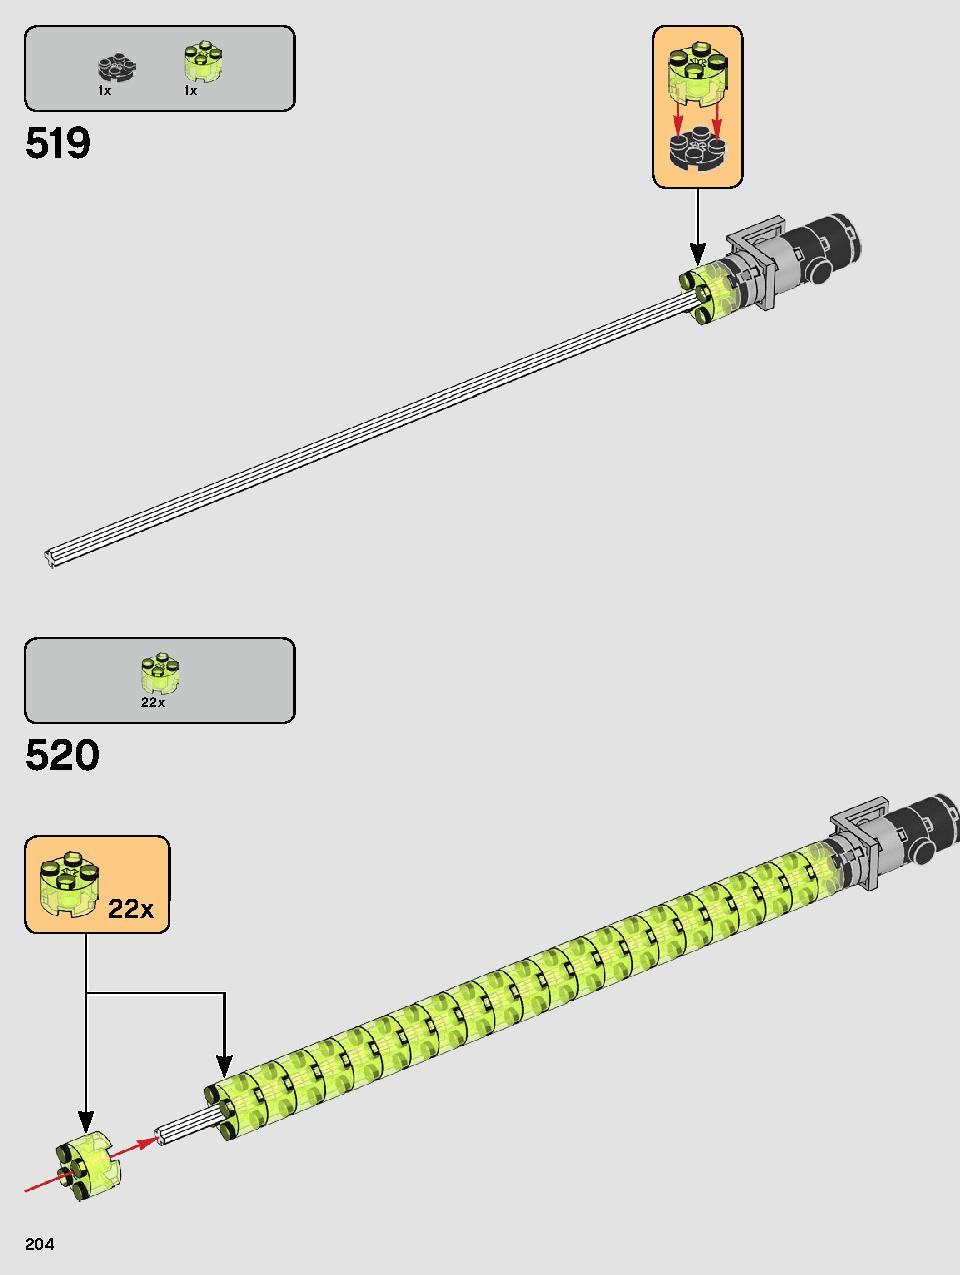 ヨーダ™ 75255 レゴの商品情報 レゴの説明書・組立方法 204 page